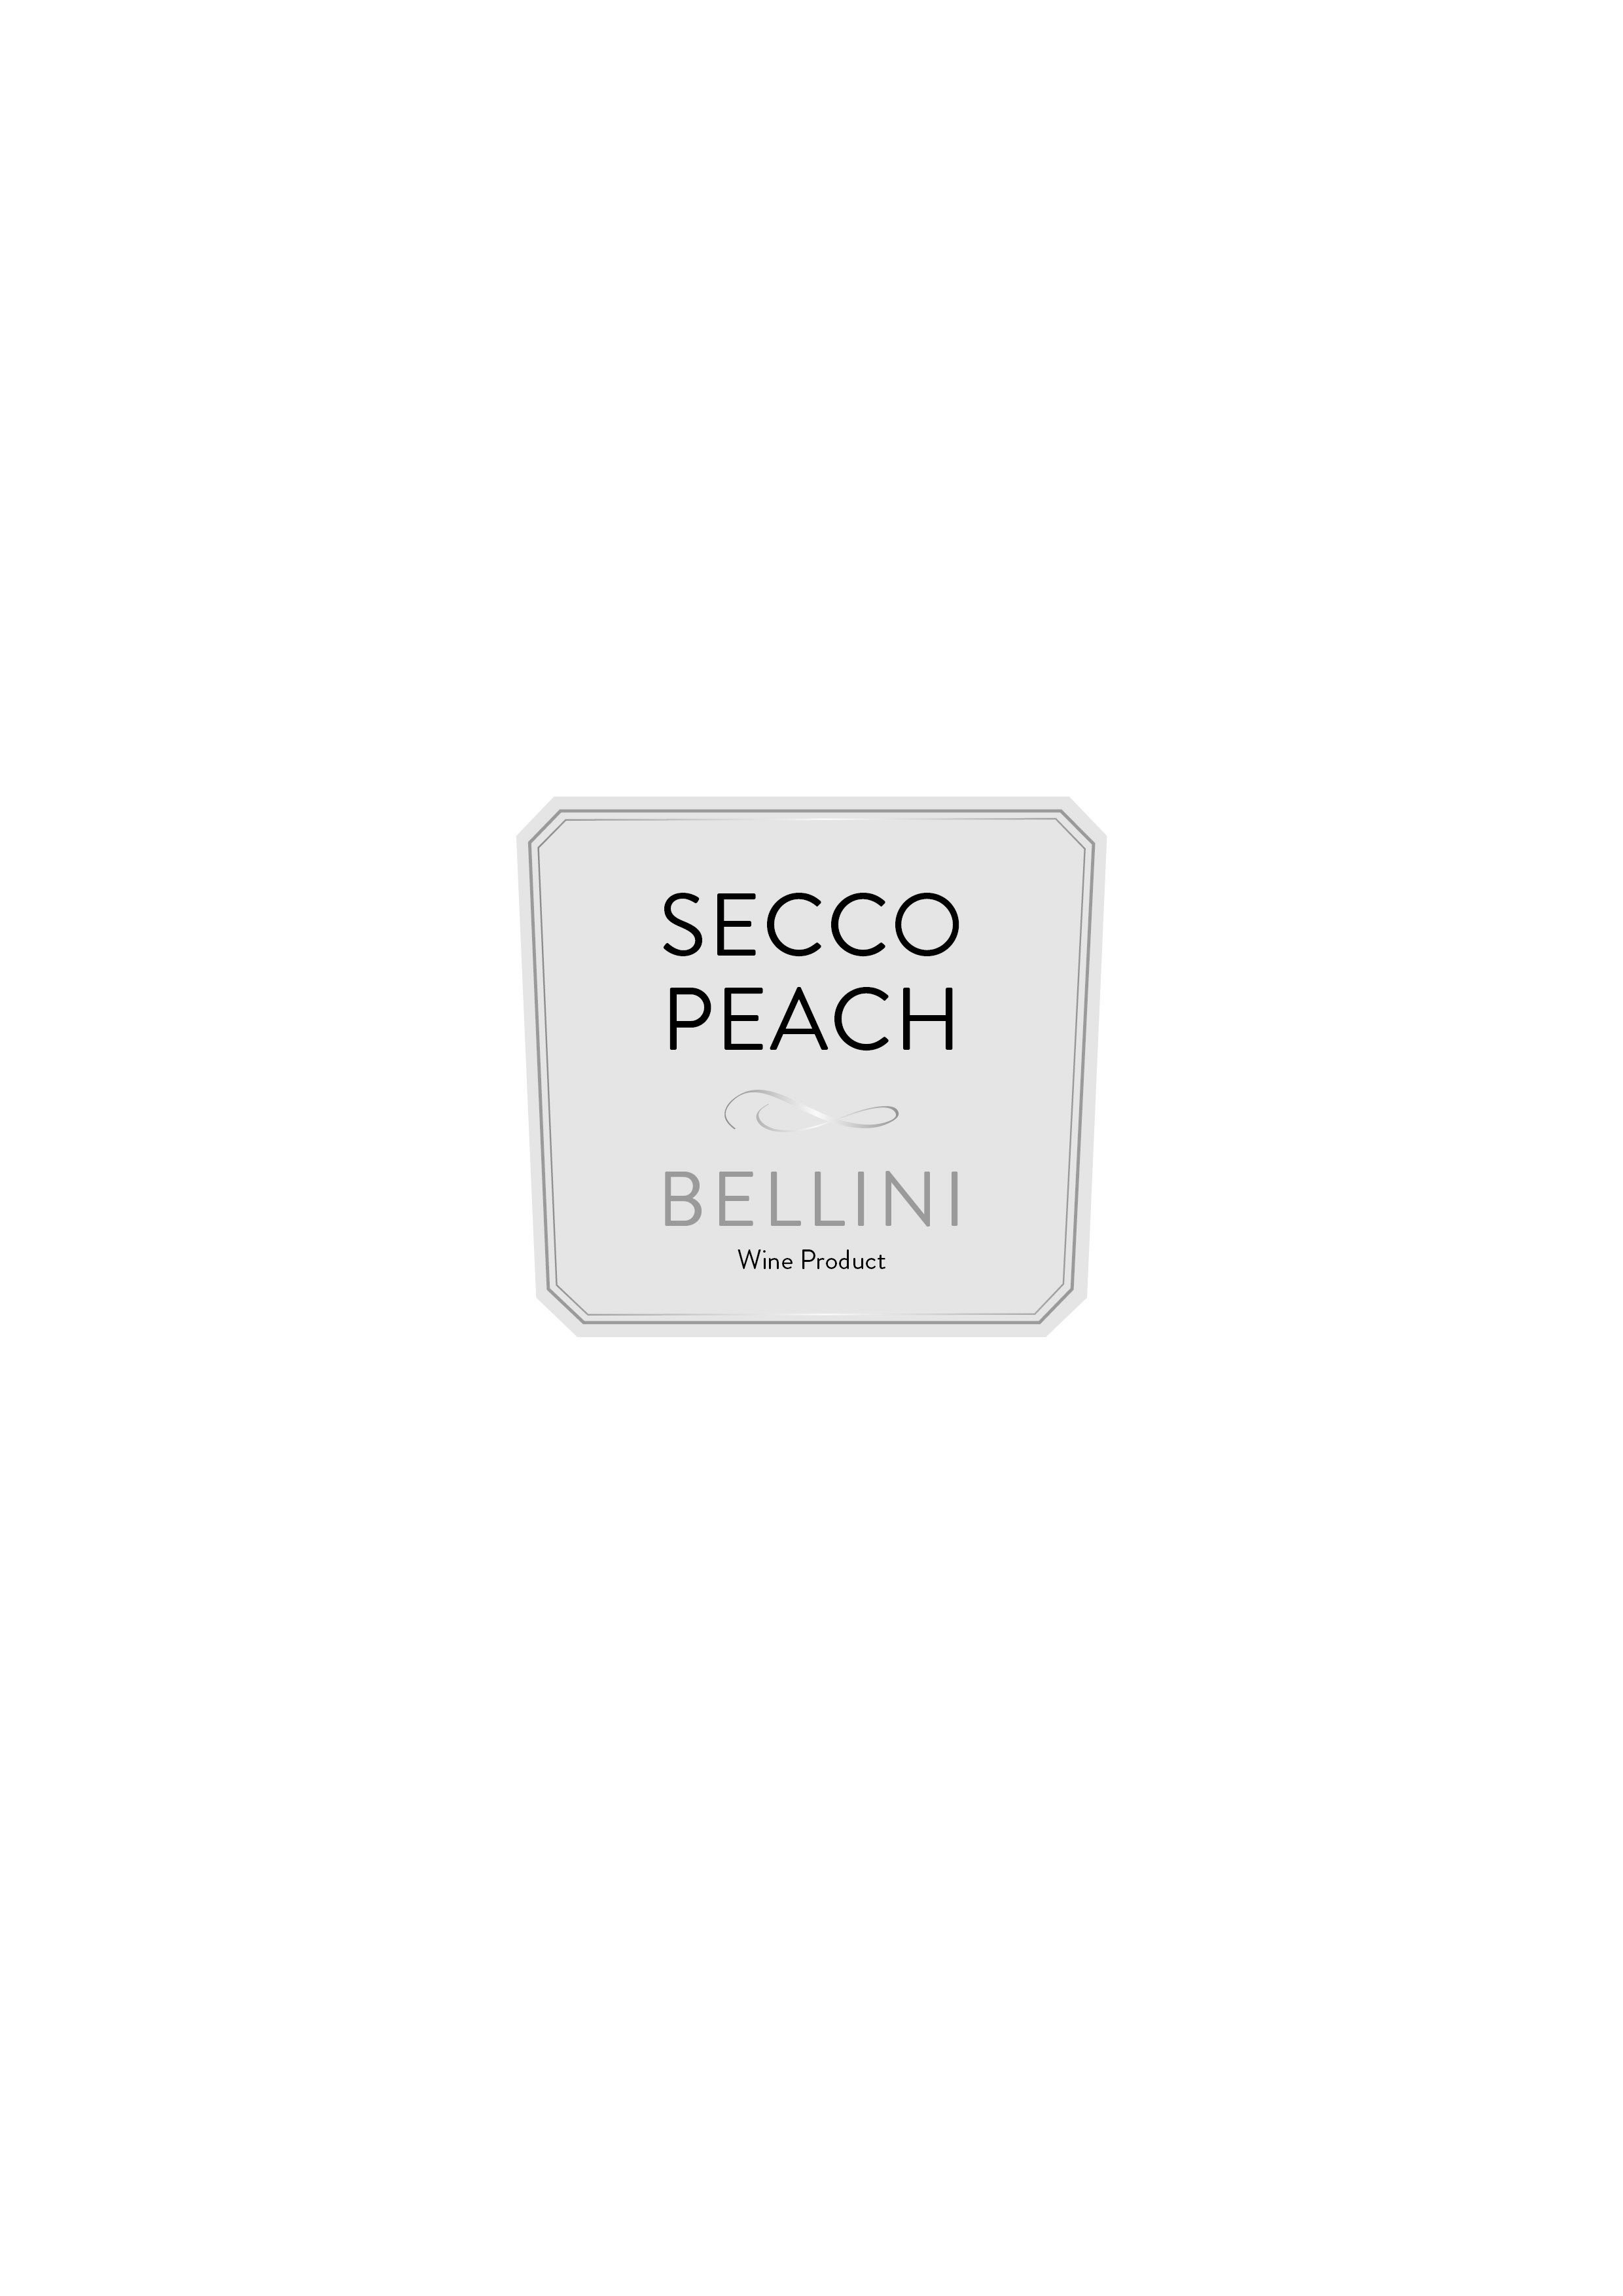 Trademark Logo SECCO PEACH BELLINI WINE PRODUCT